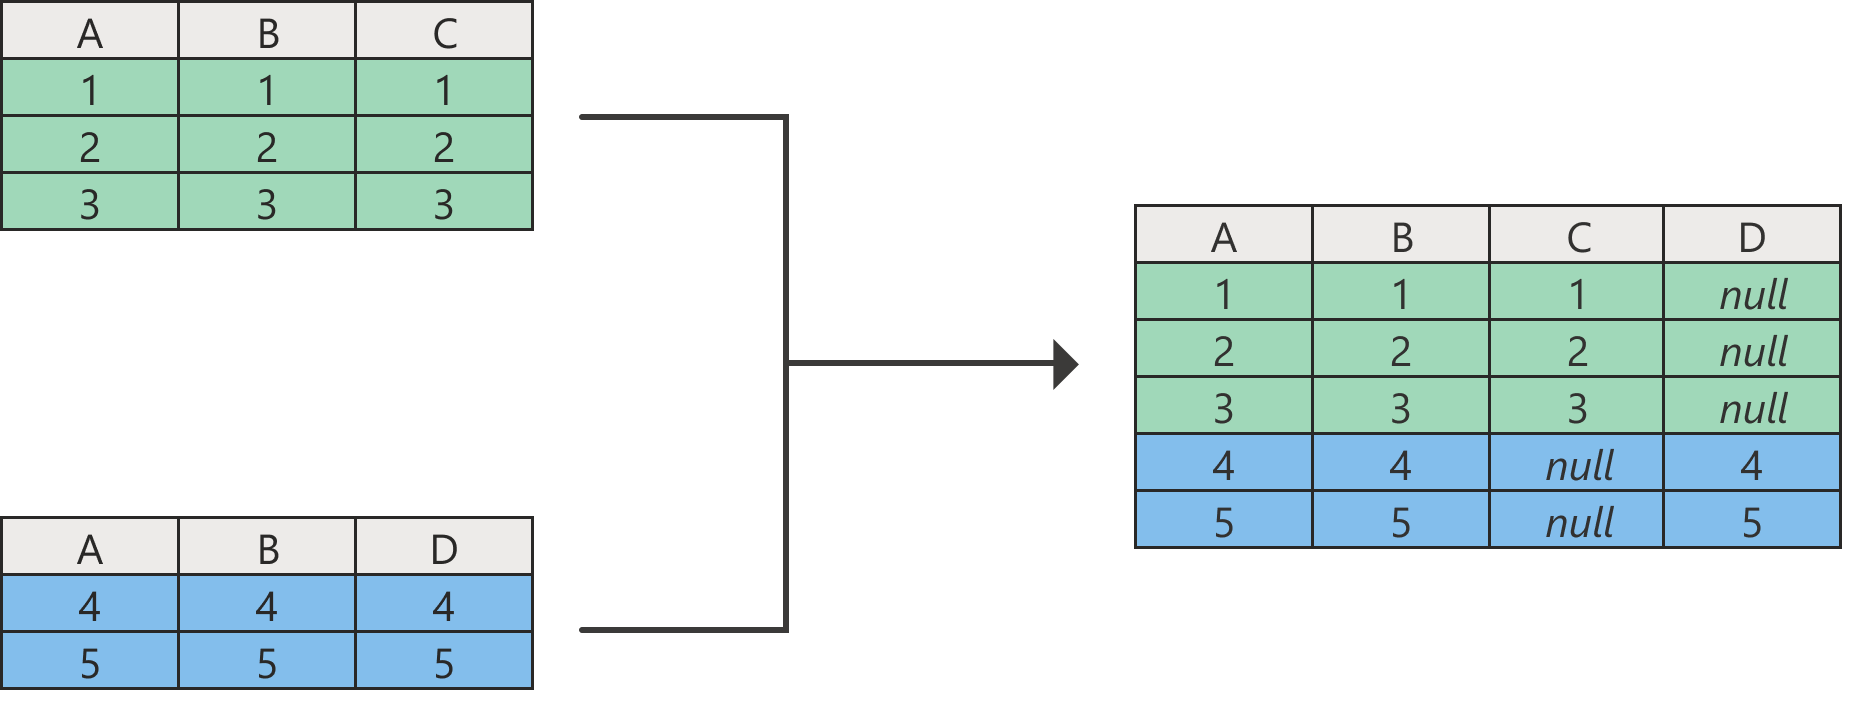 Diagram znázorňující výsledek operace připojení s hodnotami null ve sloupcích, které neexistují v jedné z původních tabulek